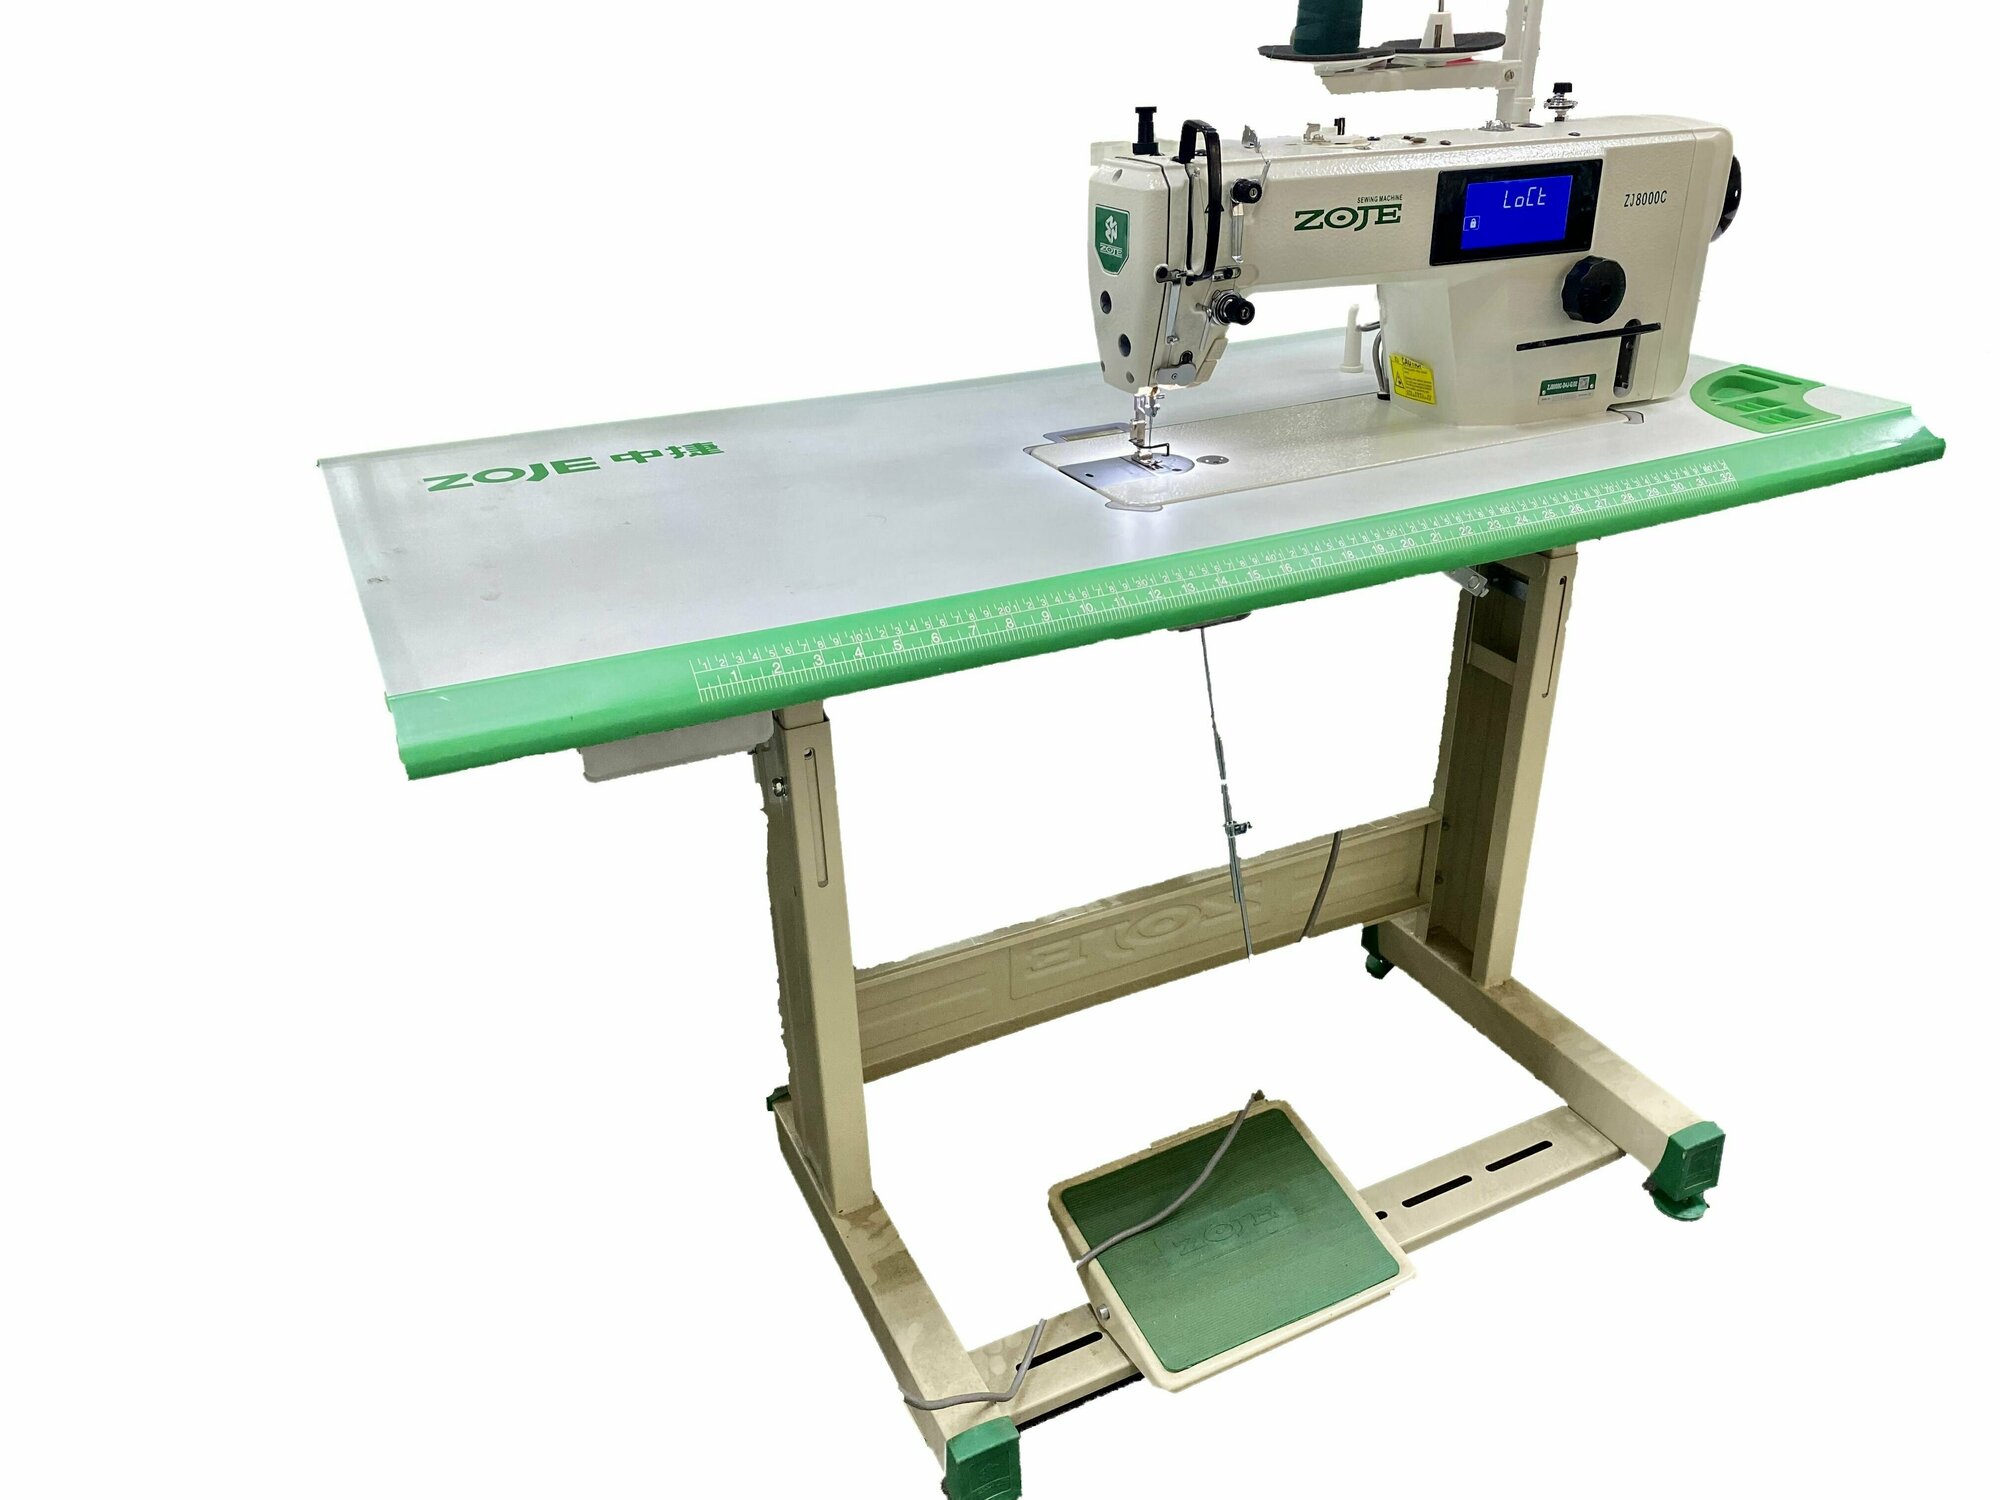 Швейная машина челночного стежка, Одноигольная, прямострочная со столом ZOJE ZJ8000C-D4J-G/02